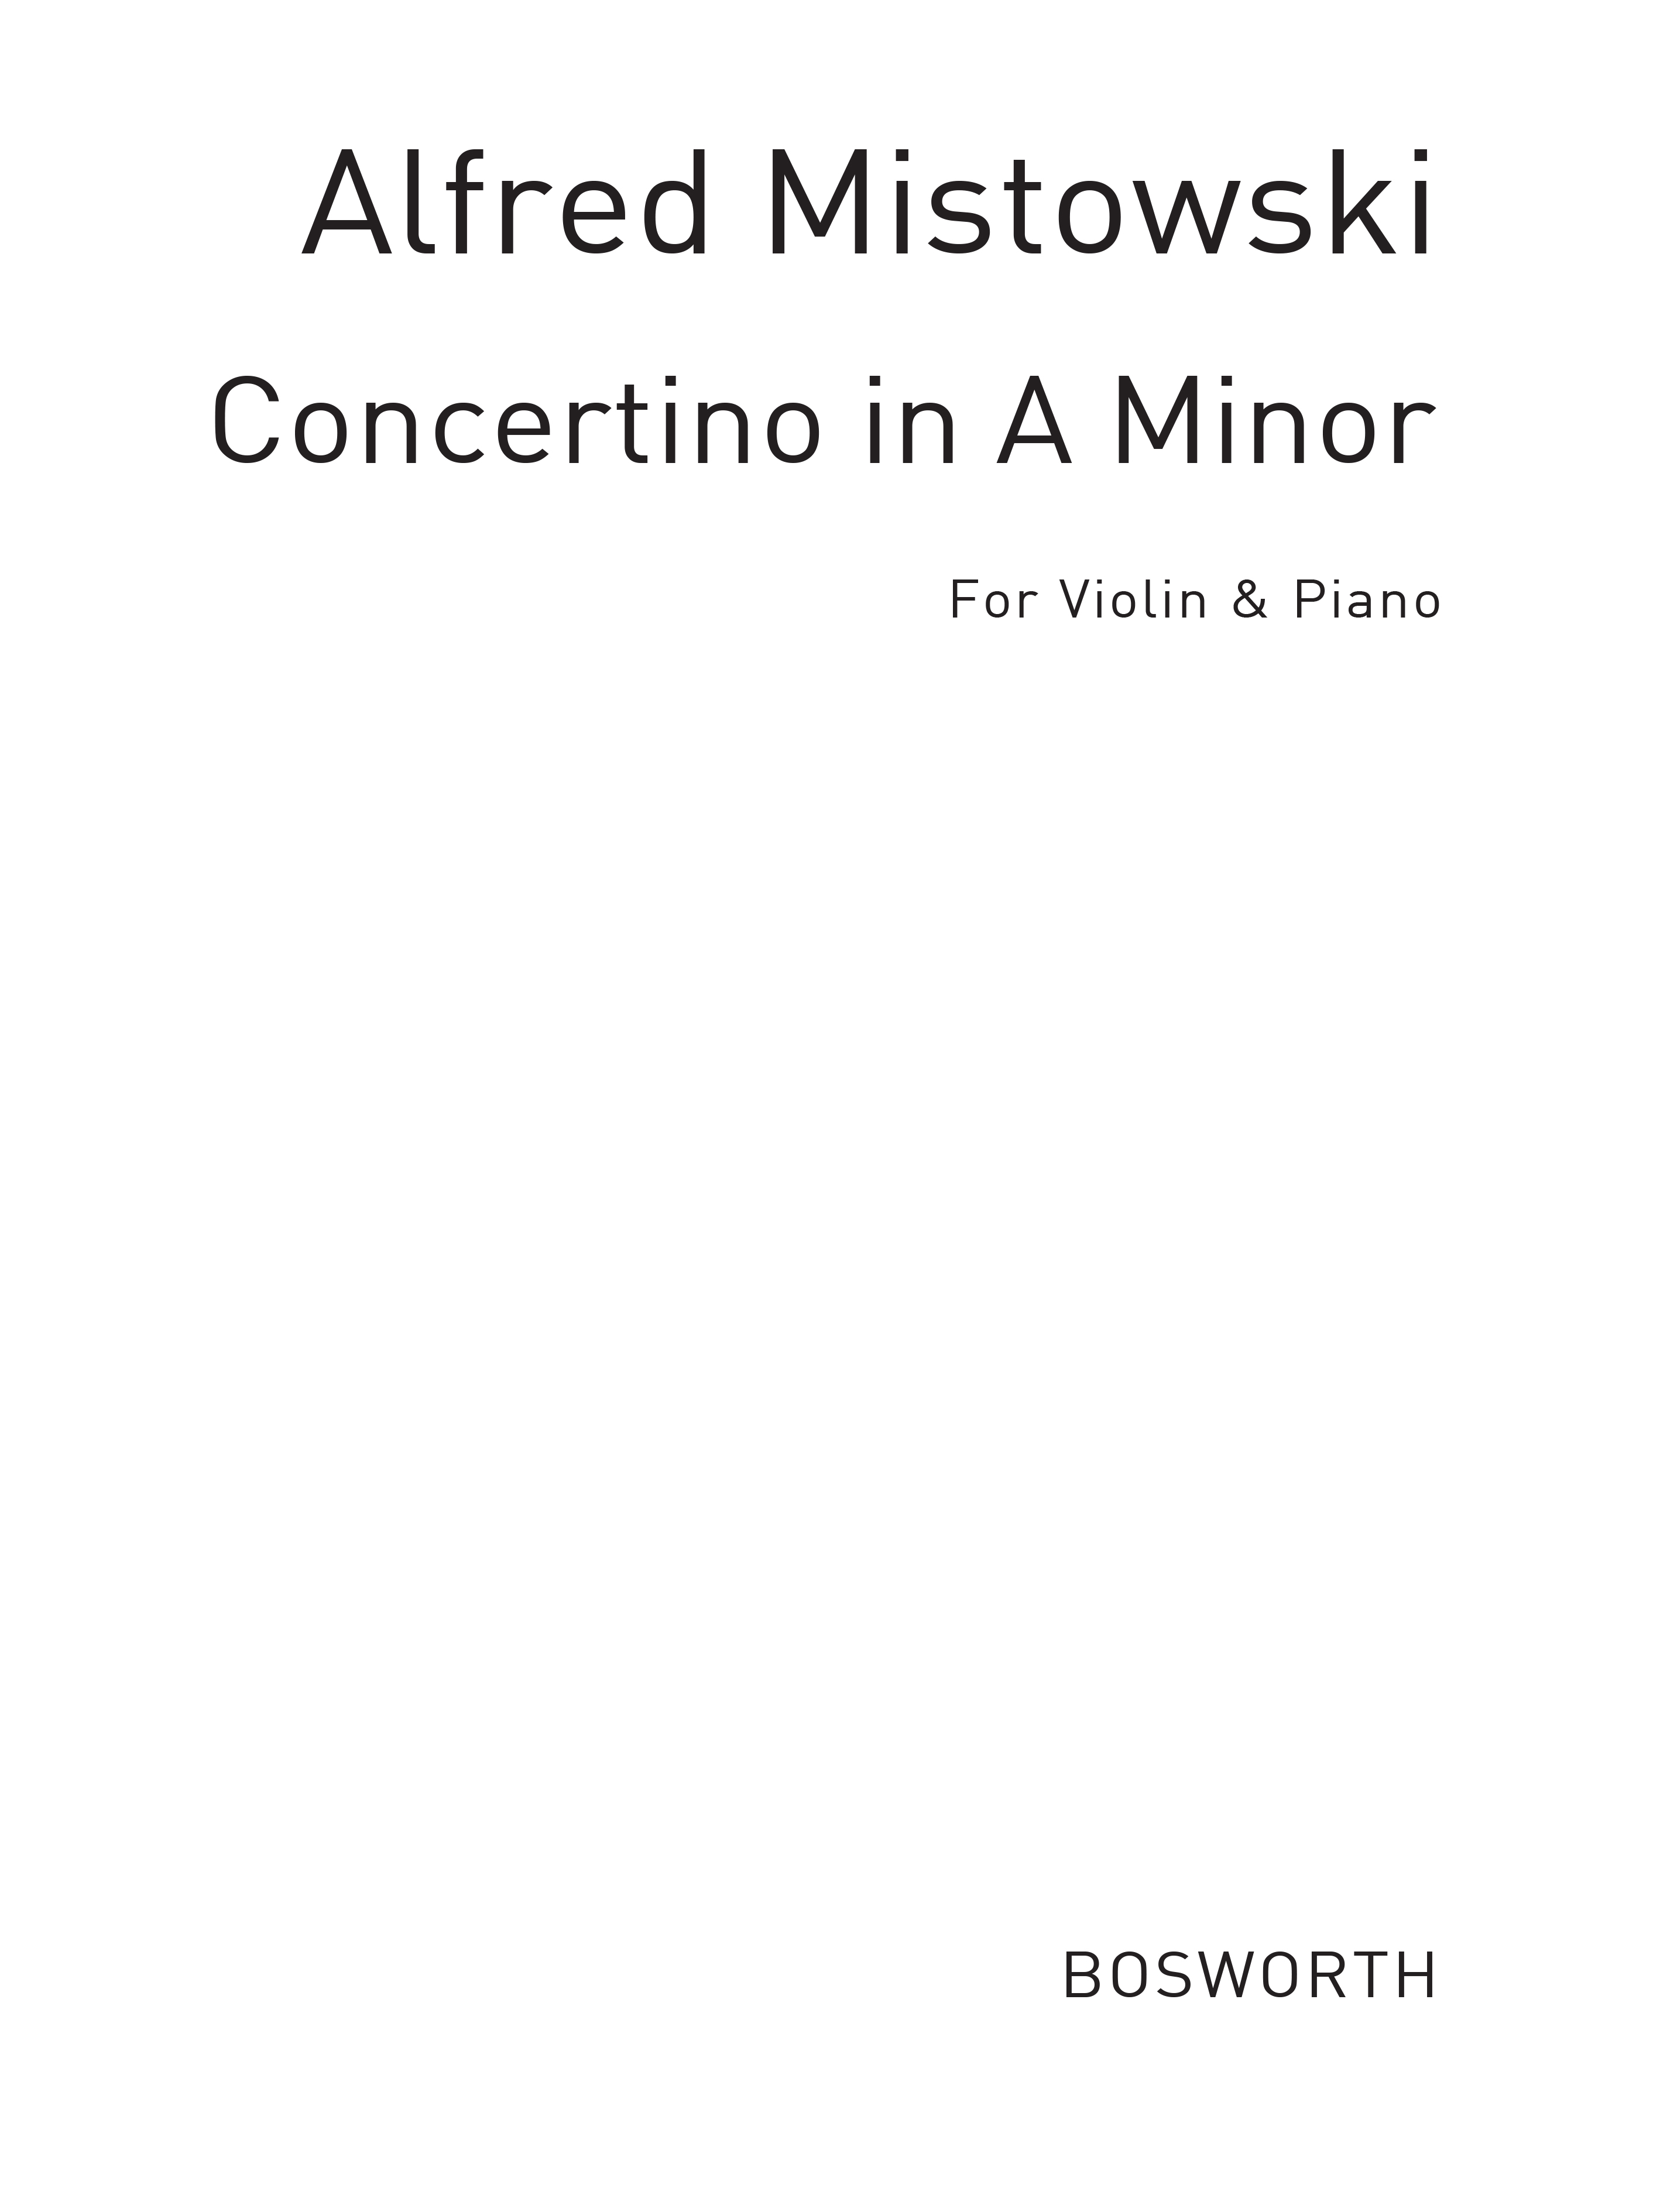 Mistowski  A Concertino In A Min: Violin